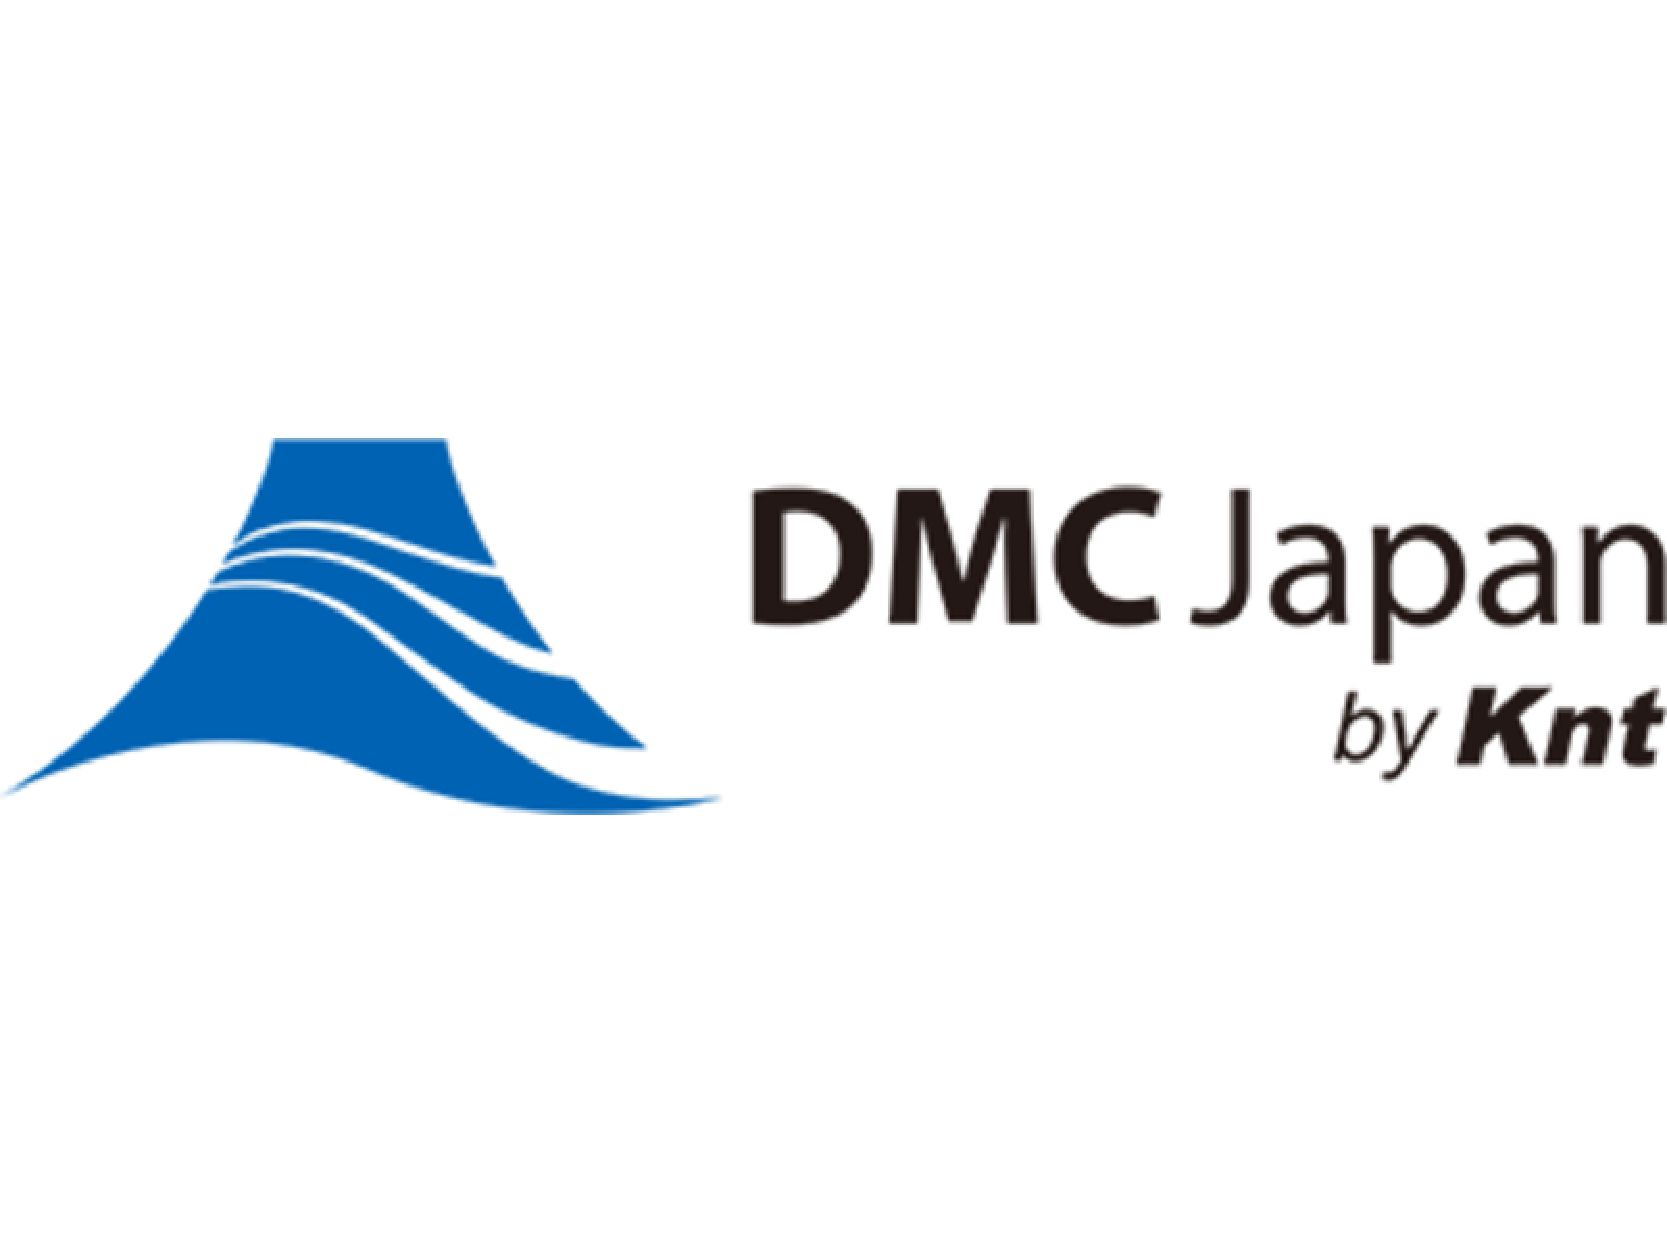 DMC Japan